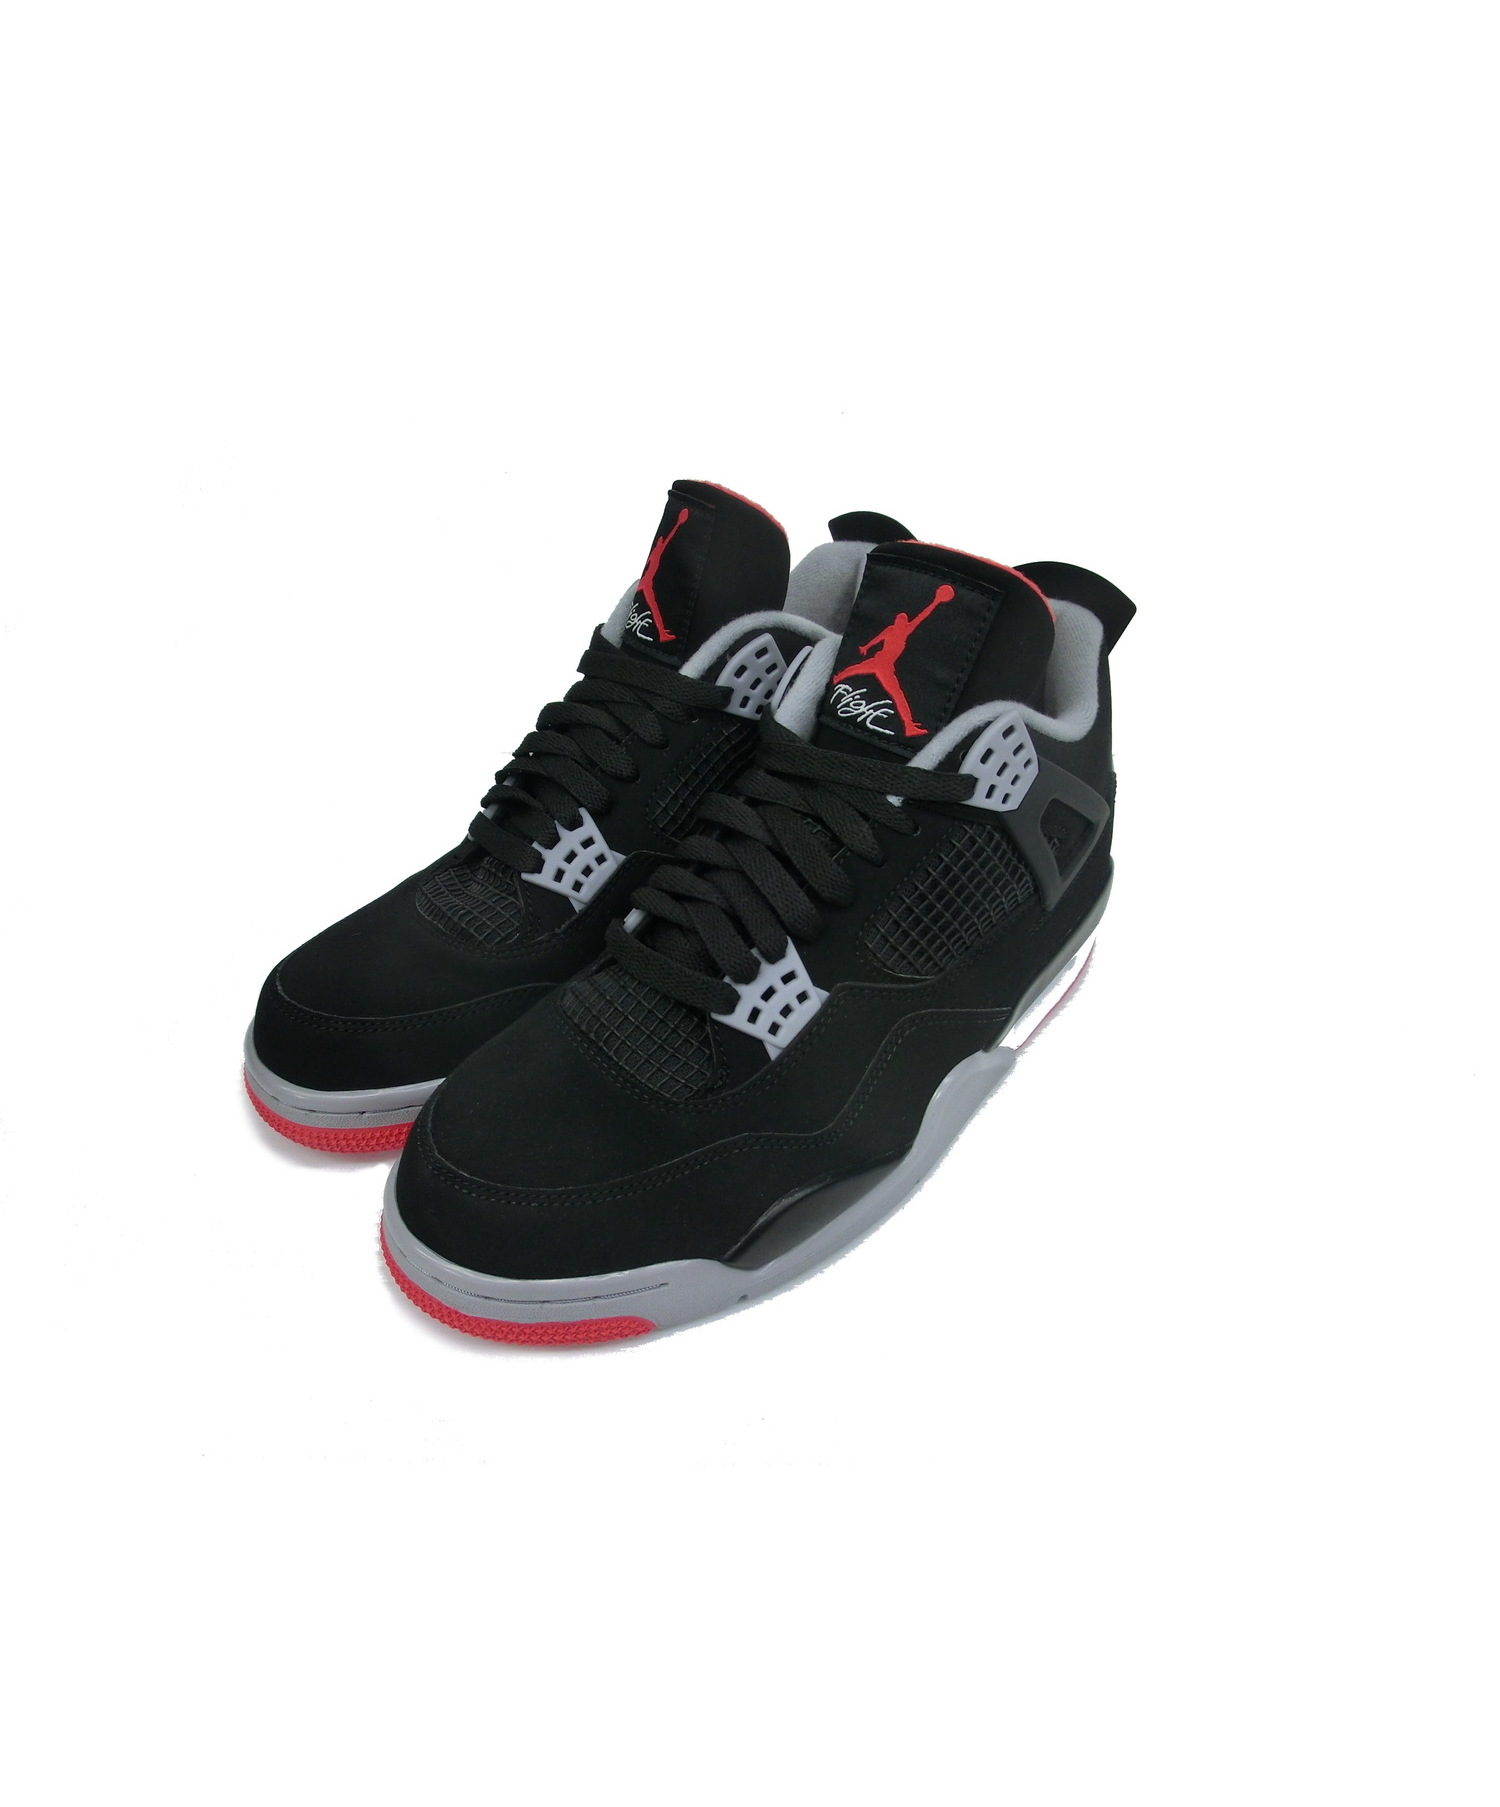 中古 古着通販 Nike Air Jordan ナイキ エアジョーダン スニーカー ブラック サイズ 27cm Air Jordan 4 Retro 060 ブランド 古着通販 トレファク公式 Trefac Fashion